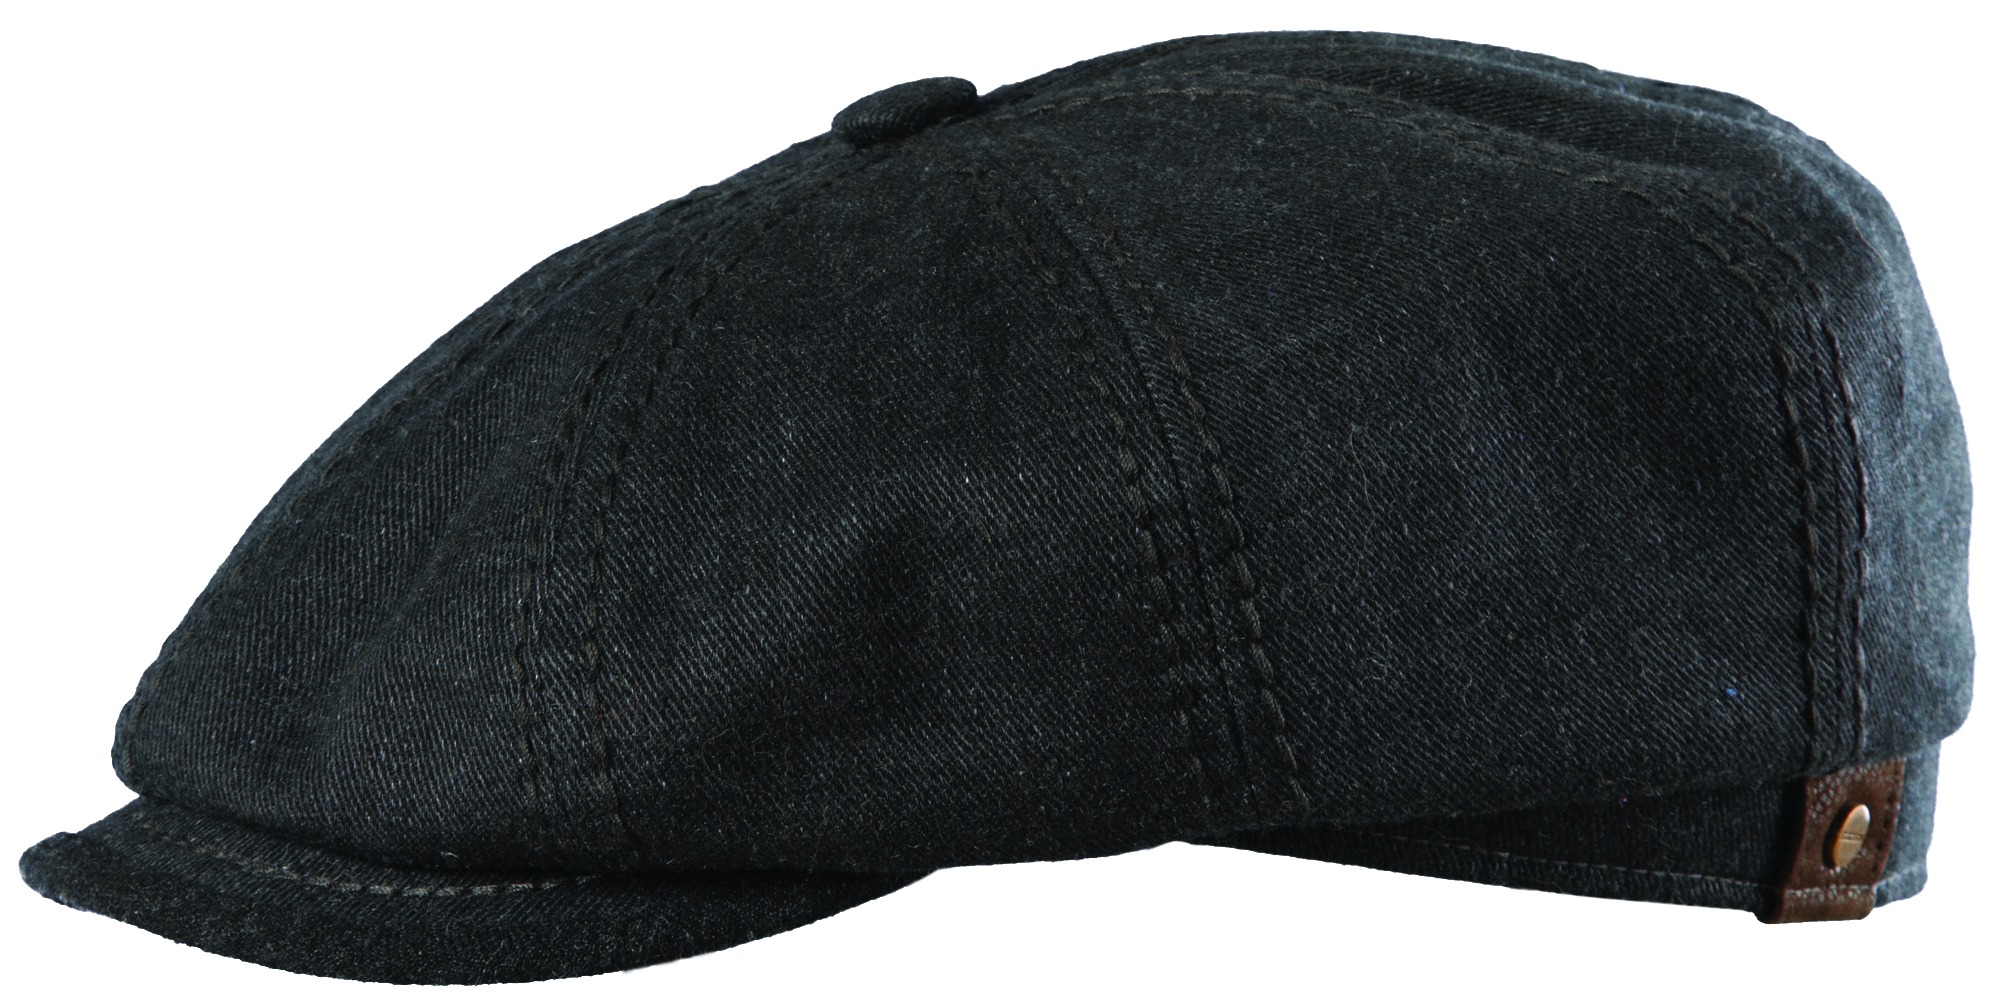 Stetson Hatteras 8/4 Virgin Wool Cap - Holland Hats